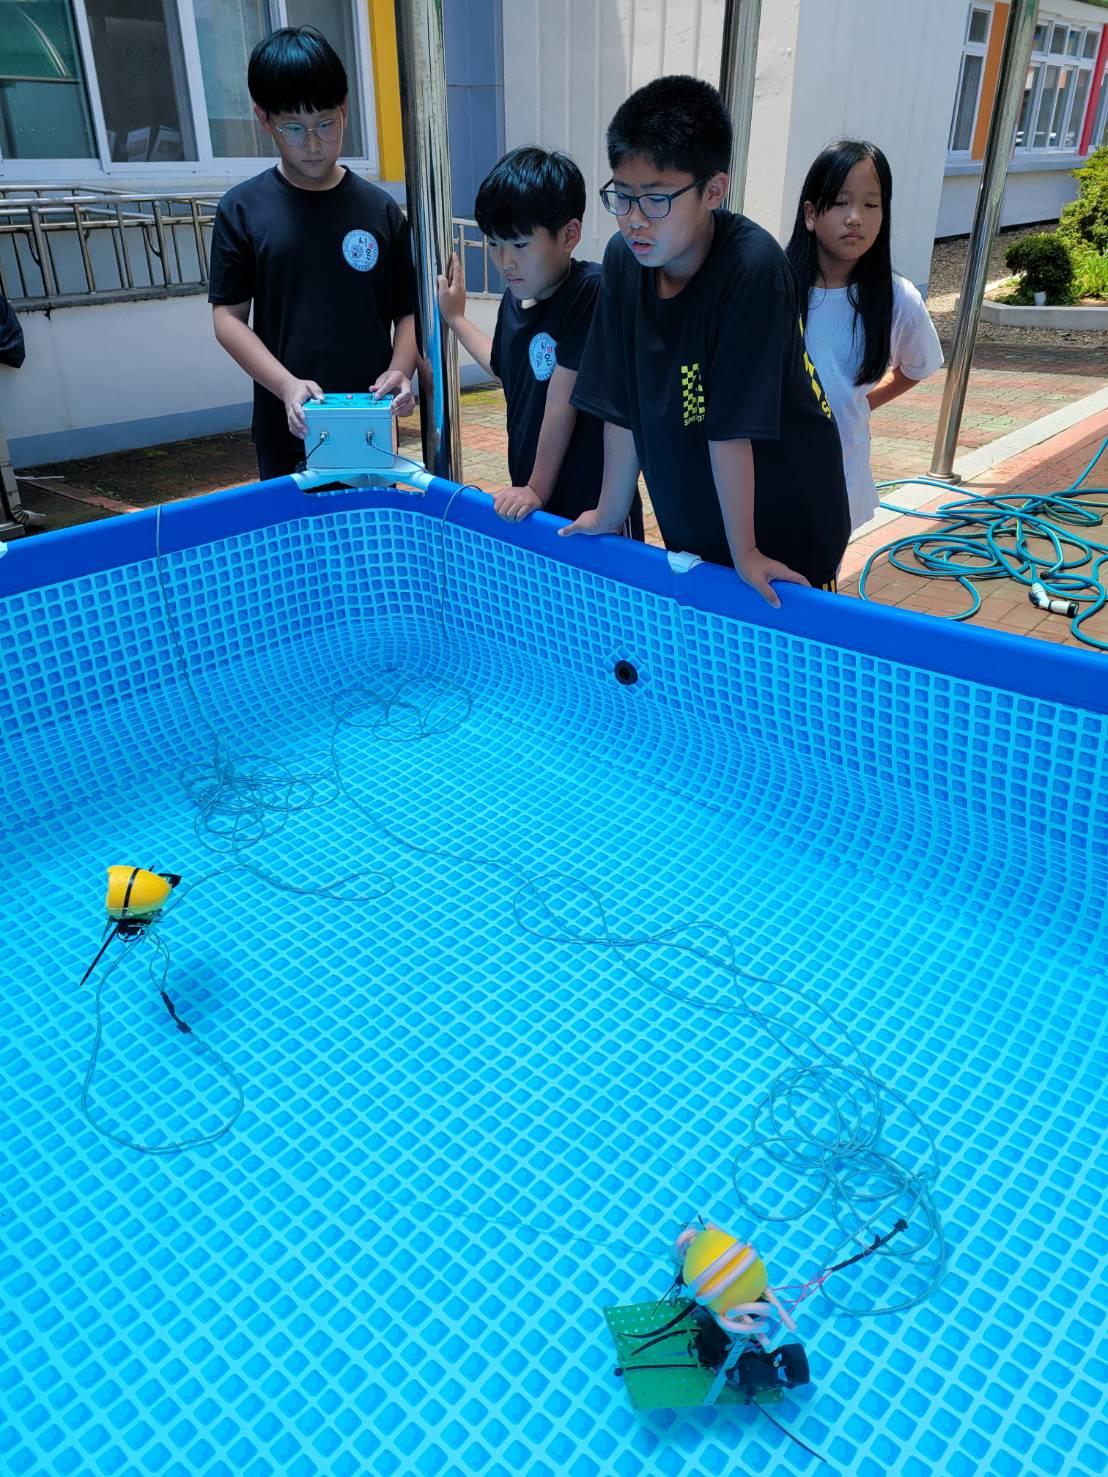 해양환경·바다지킴이 동아리에 참가한 월포초등학교 청소년들이 직접 만든 수중로봇(ROV)를 조종해보는 활동을 하고 있다